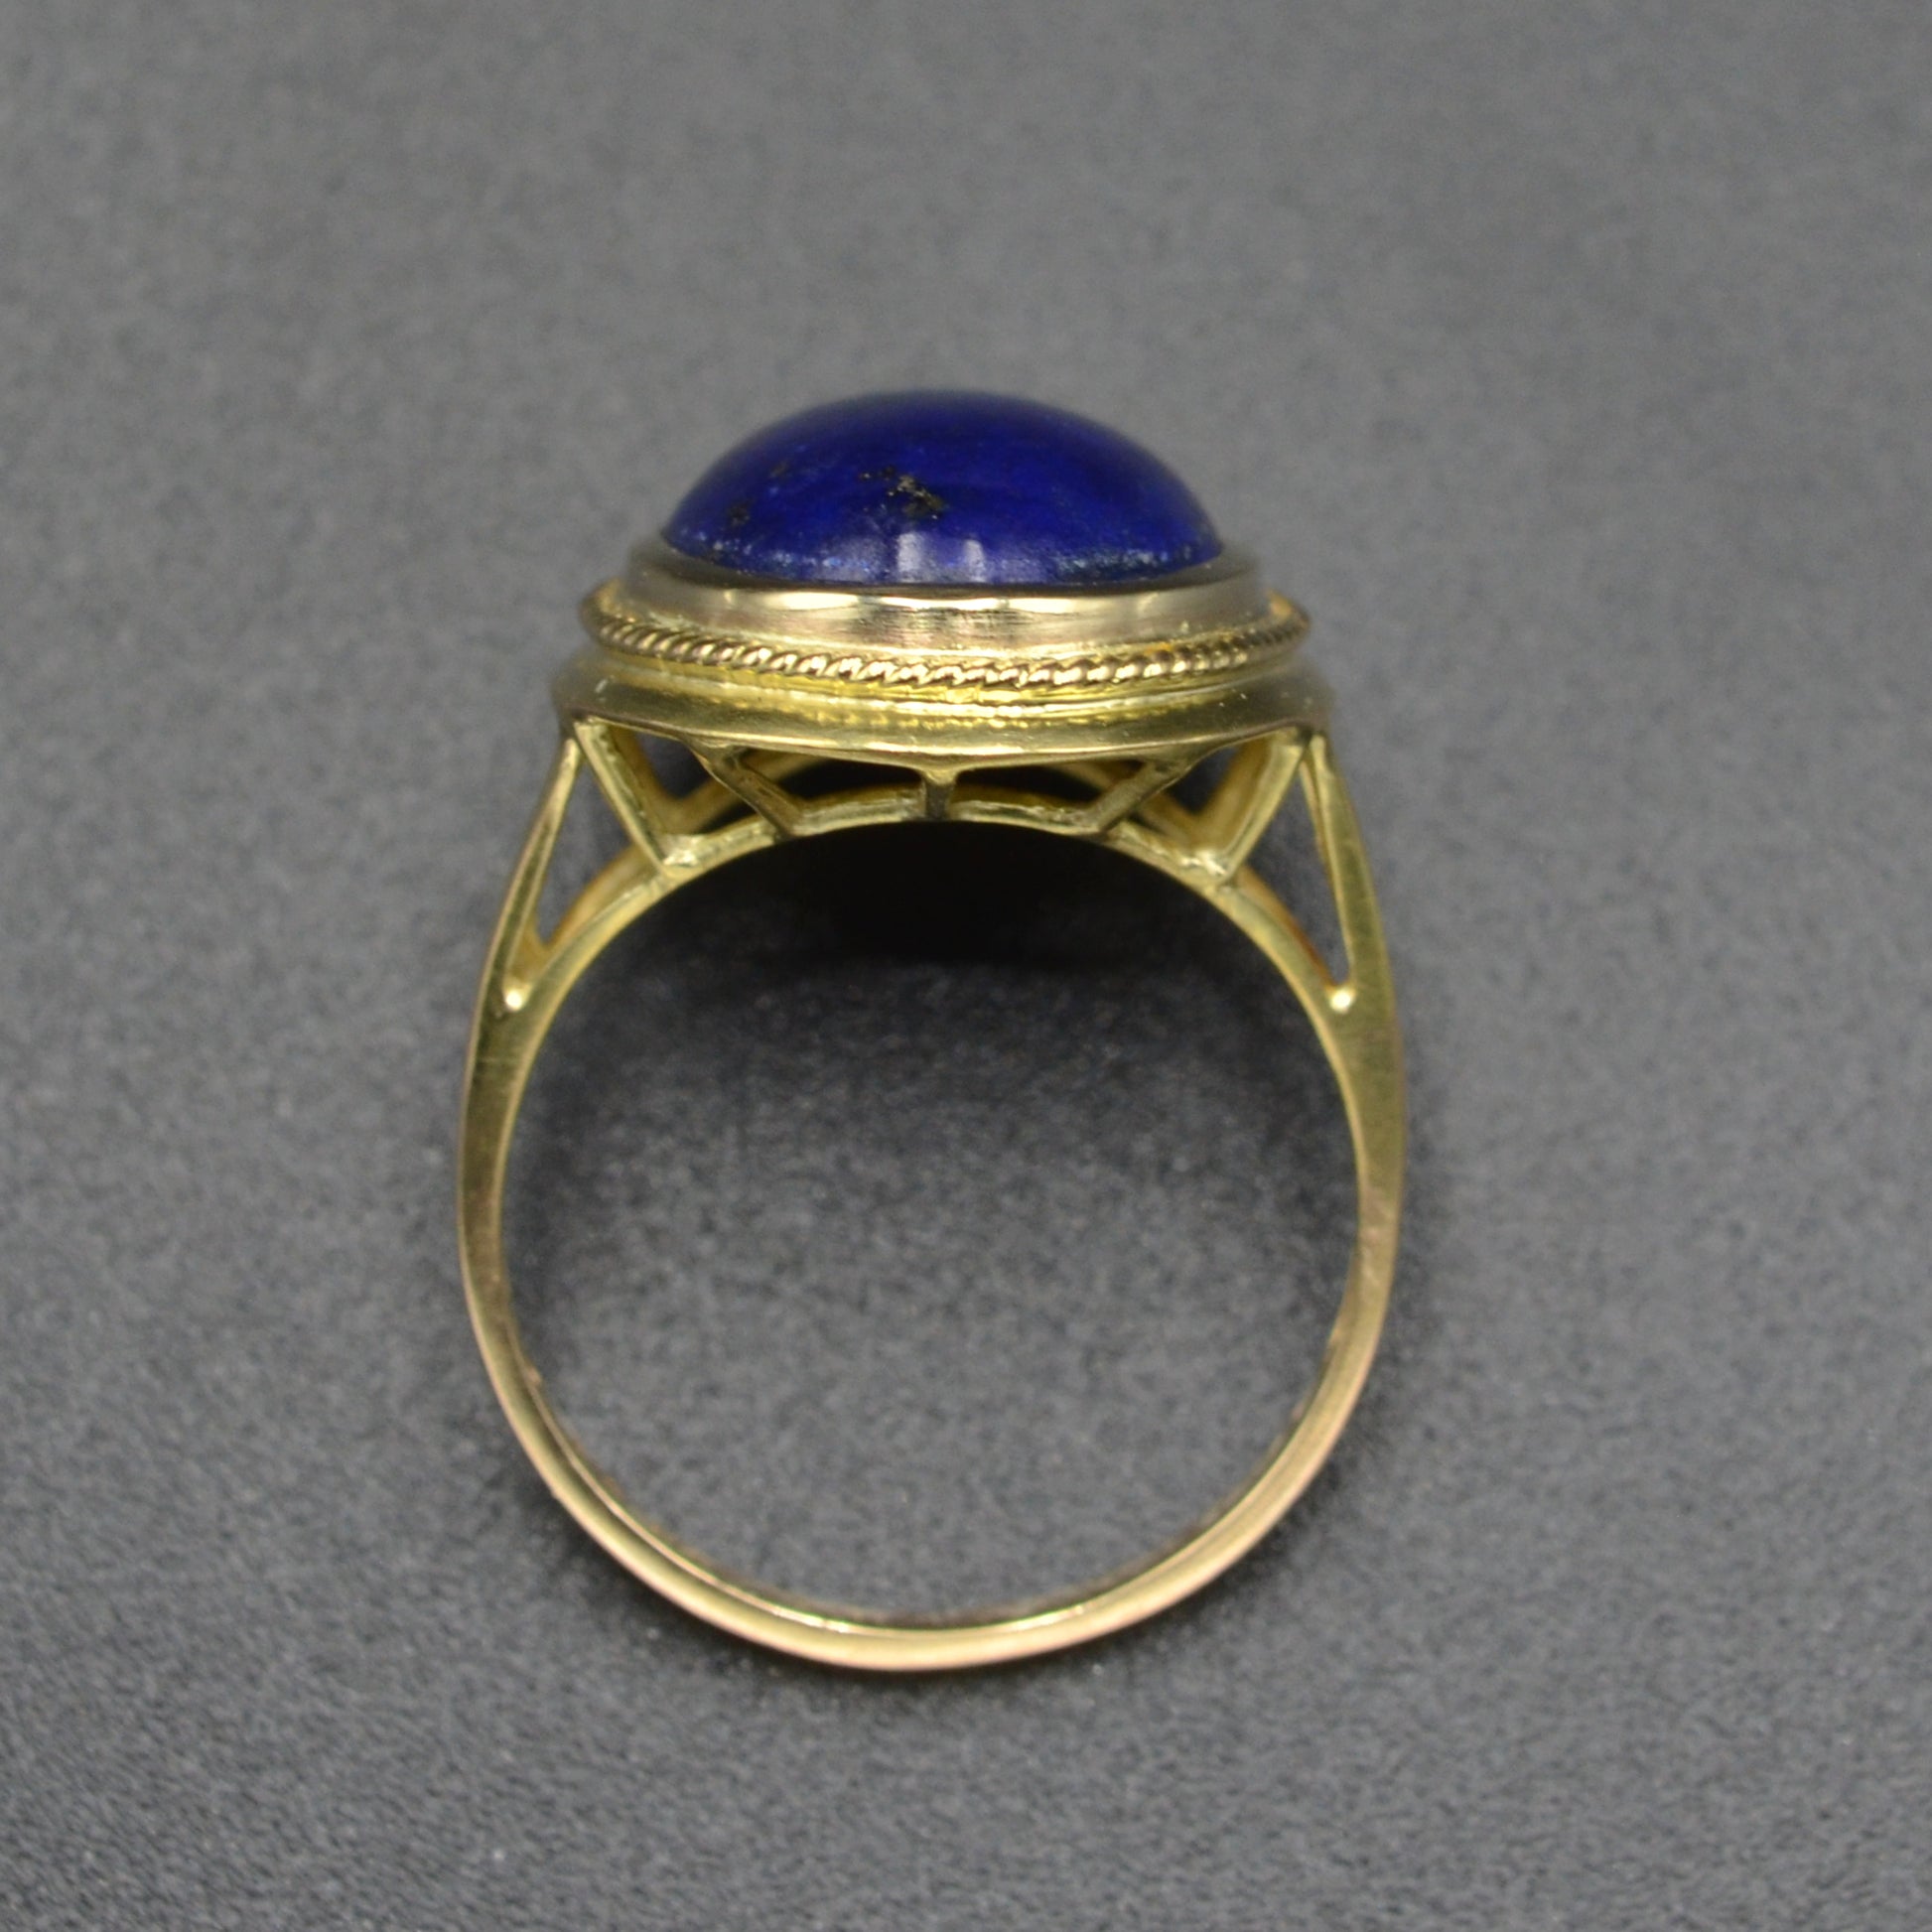 Vintage Lapis Lazuli and 14k Gold Ring